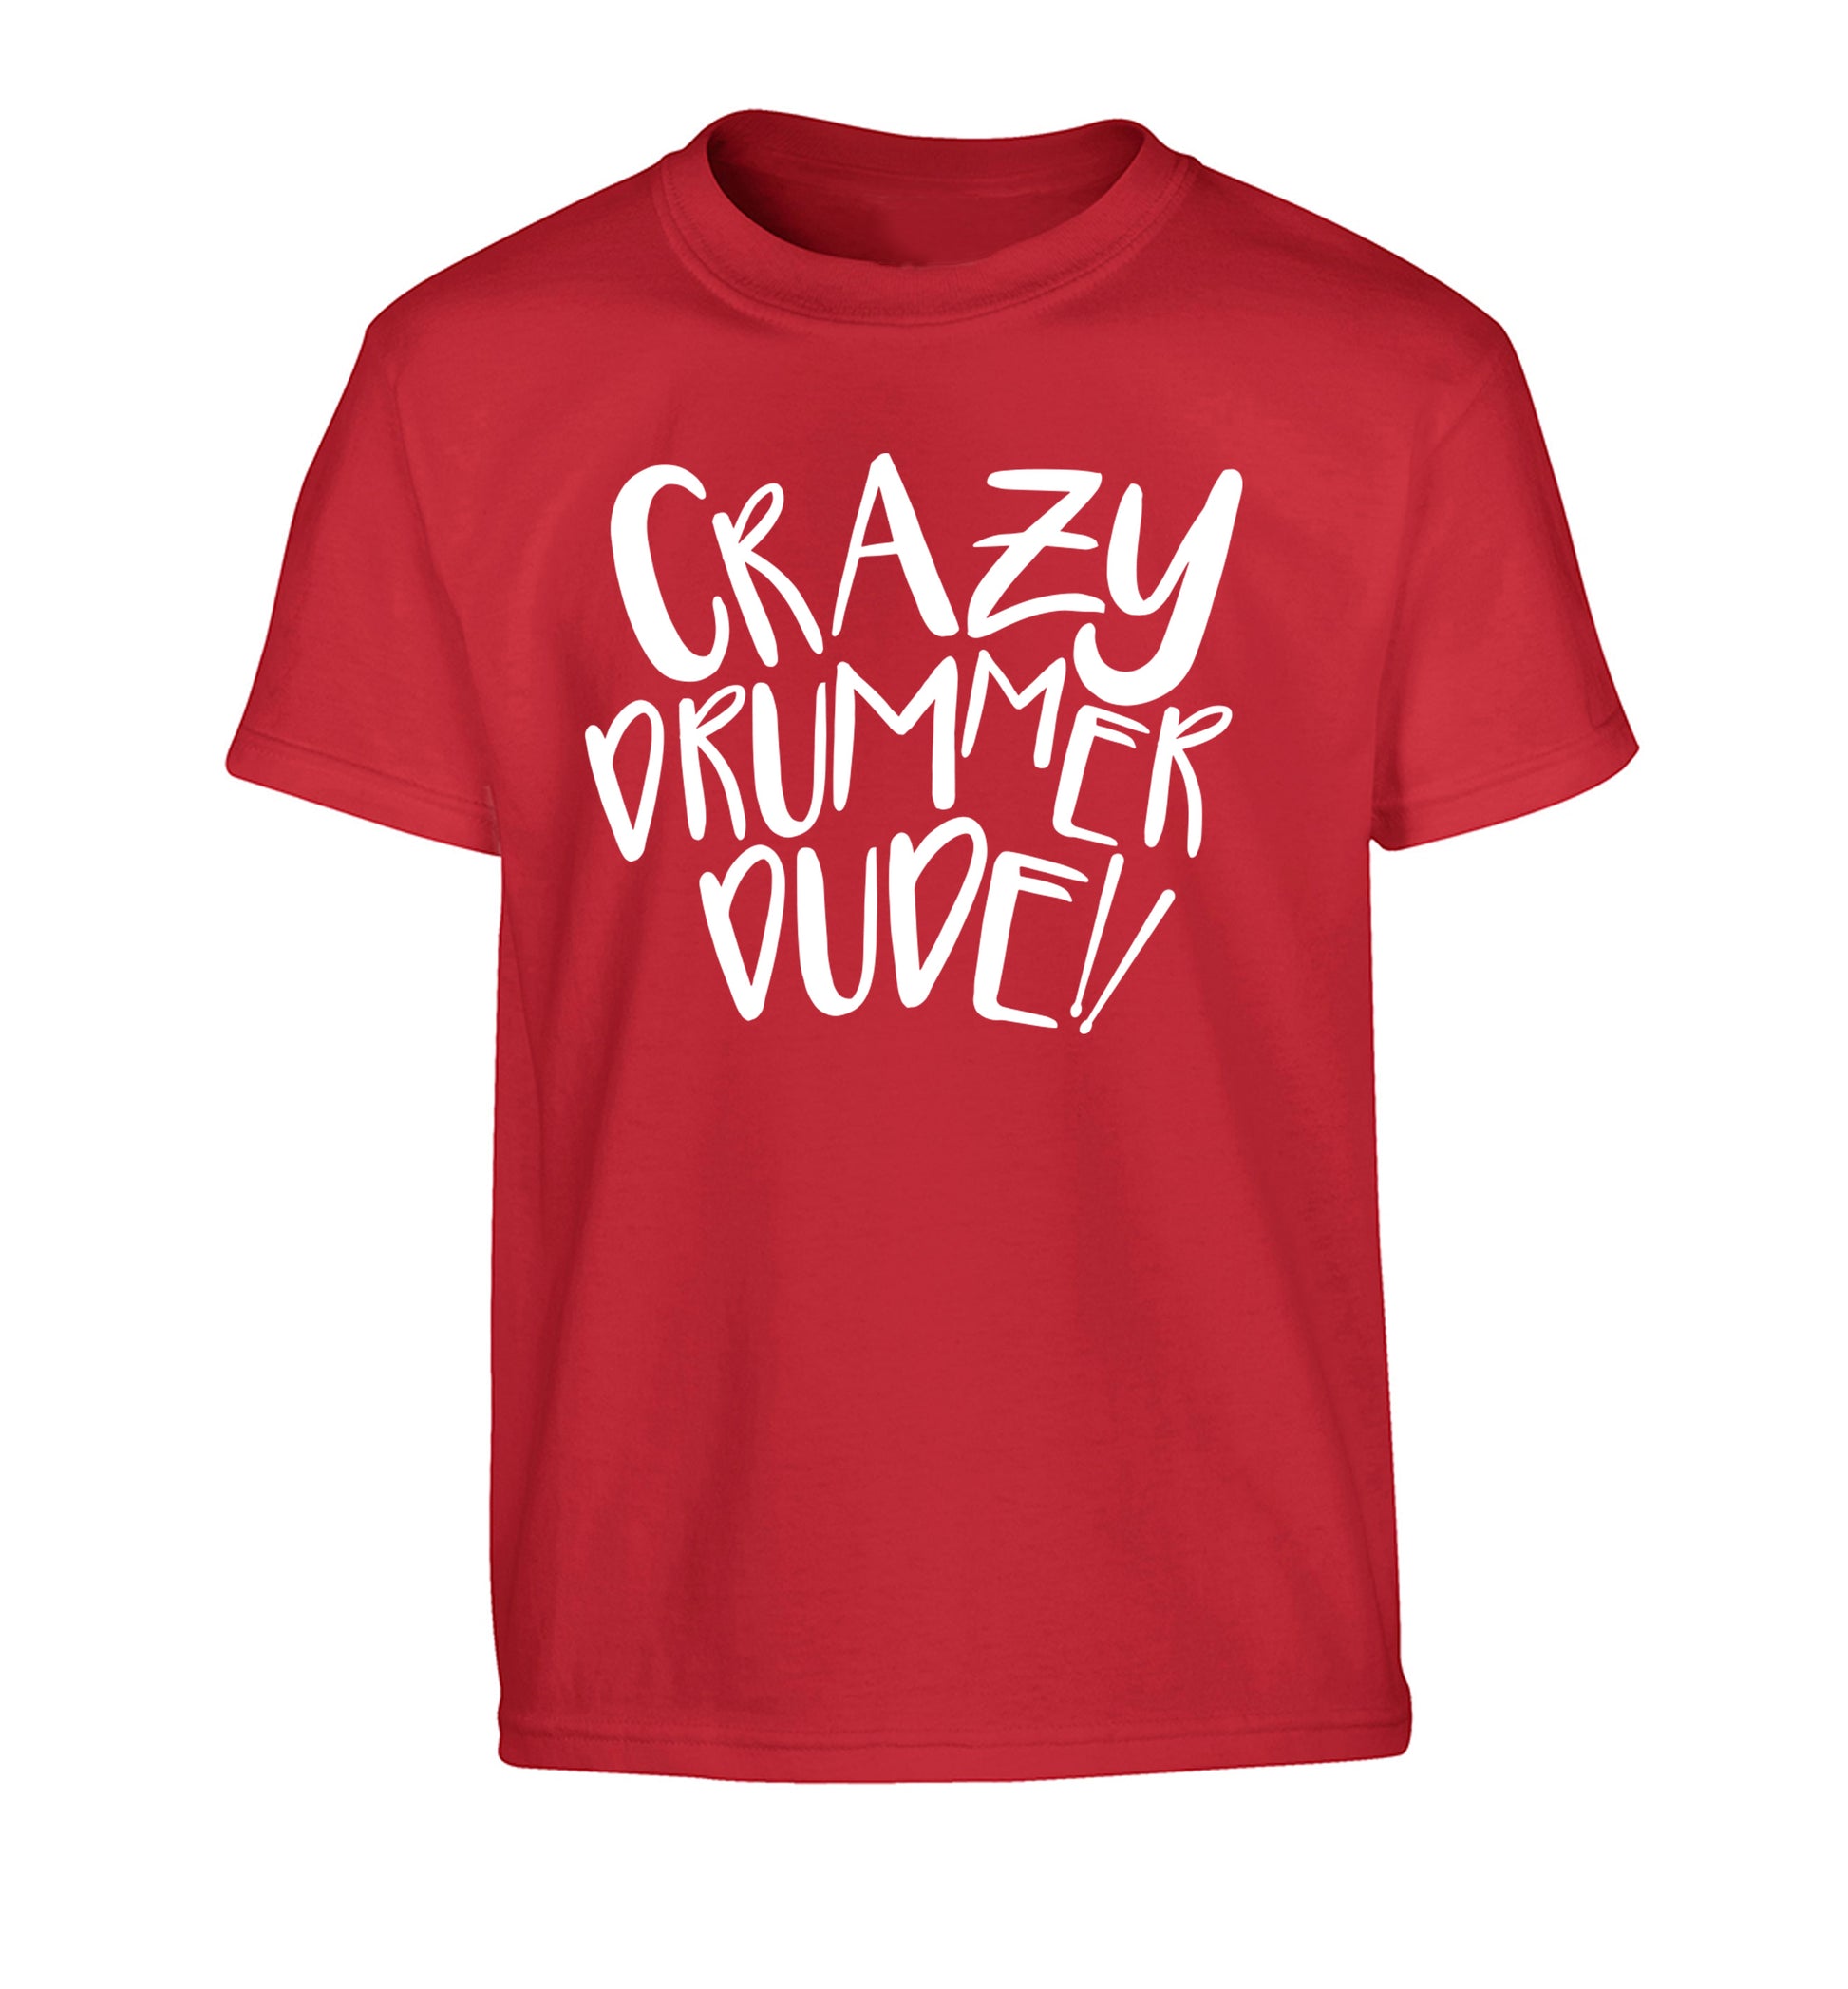 Crazy drummer dude Children's red Tshirt 12-14 Years